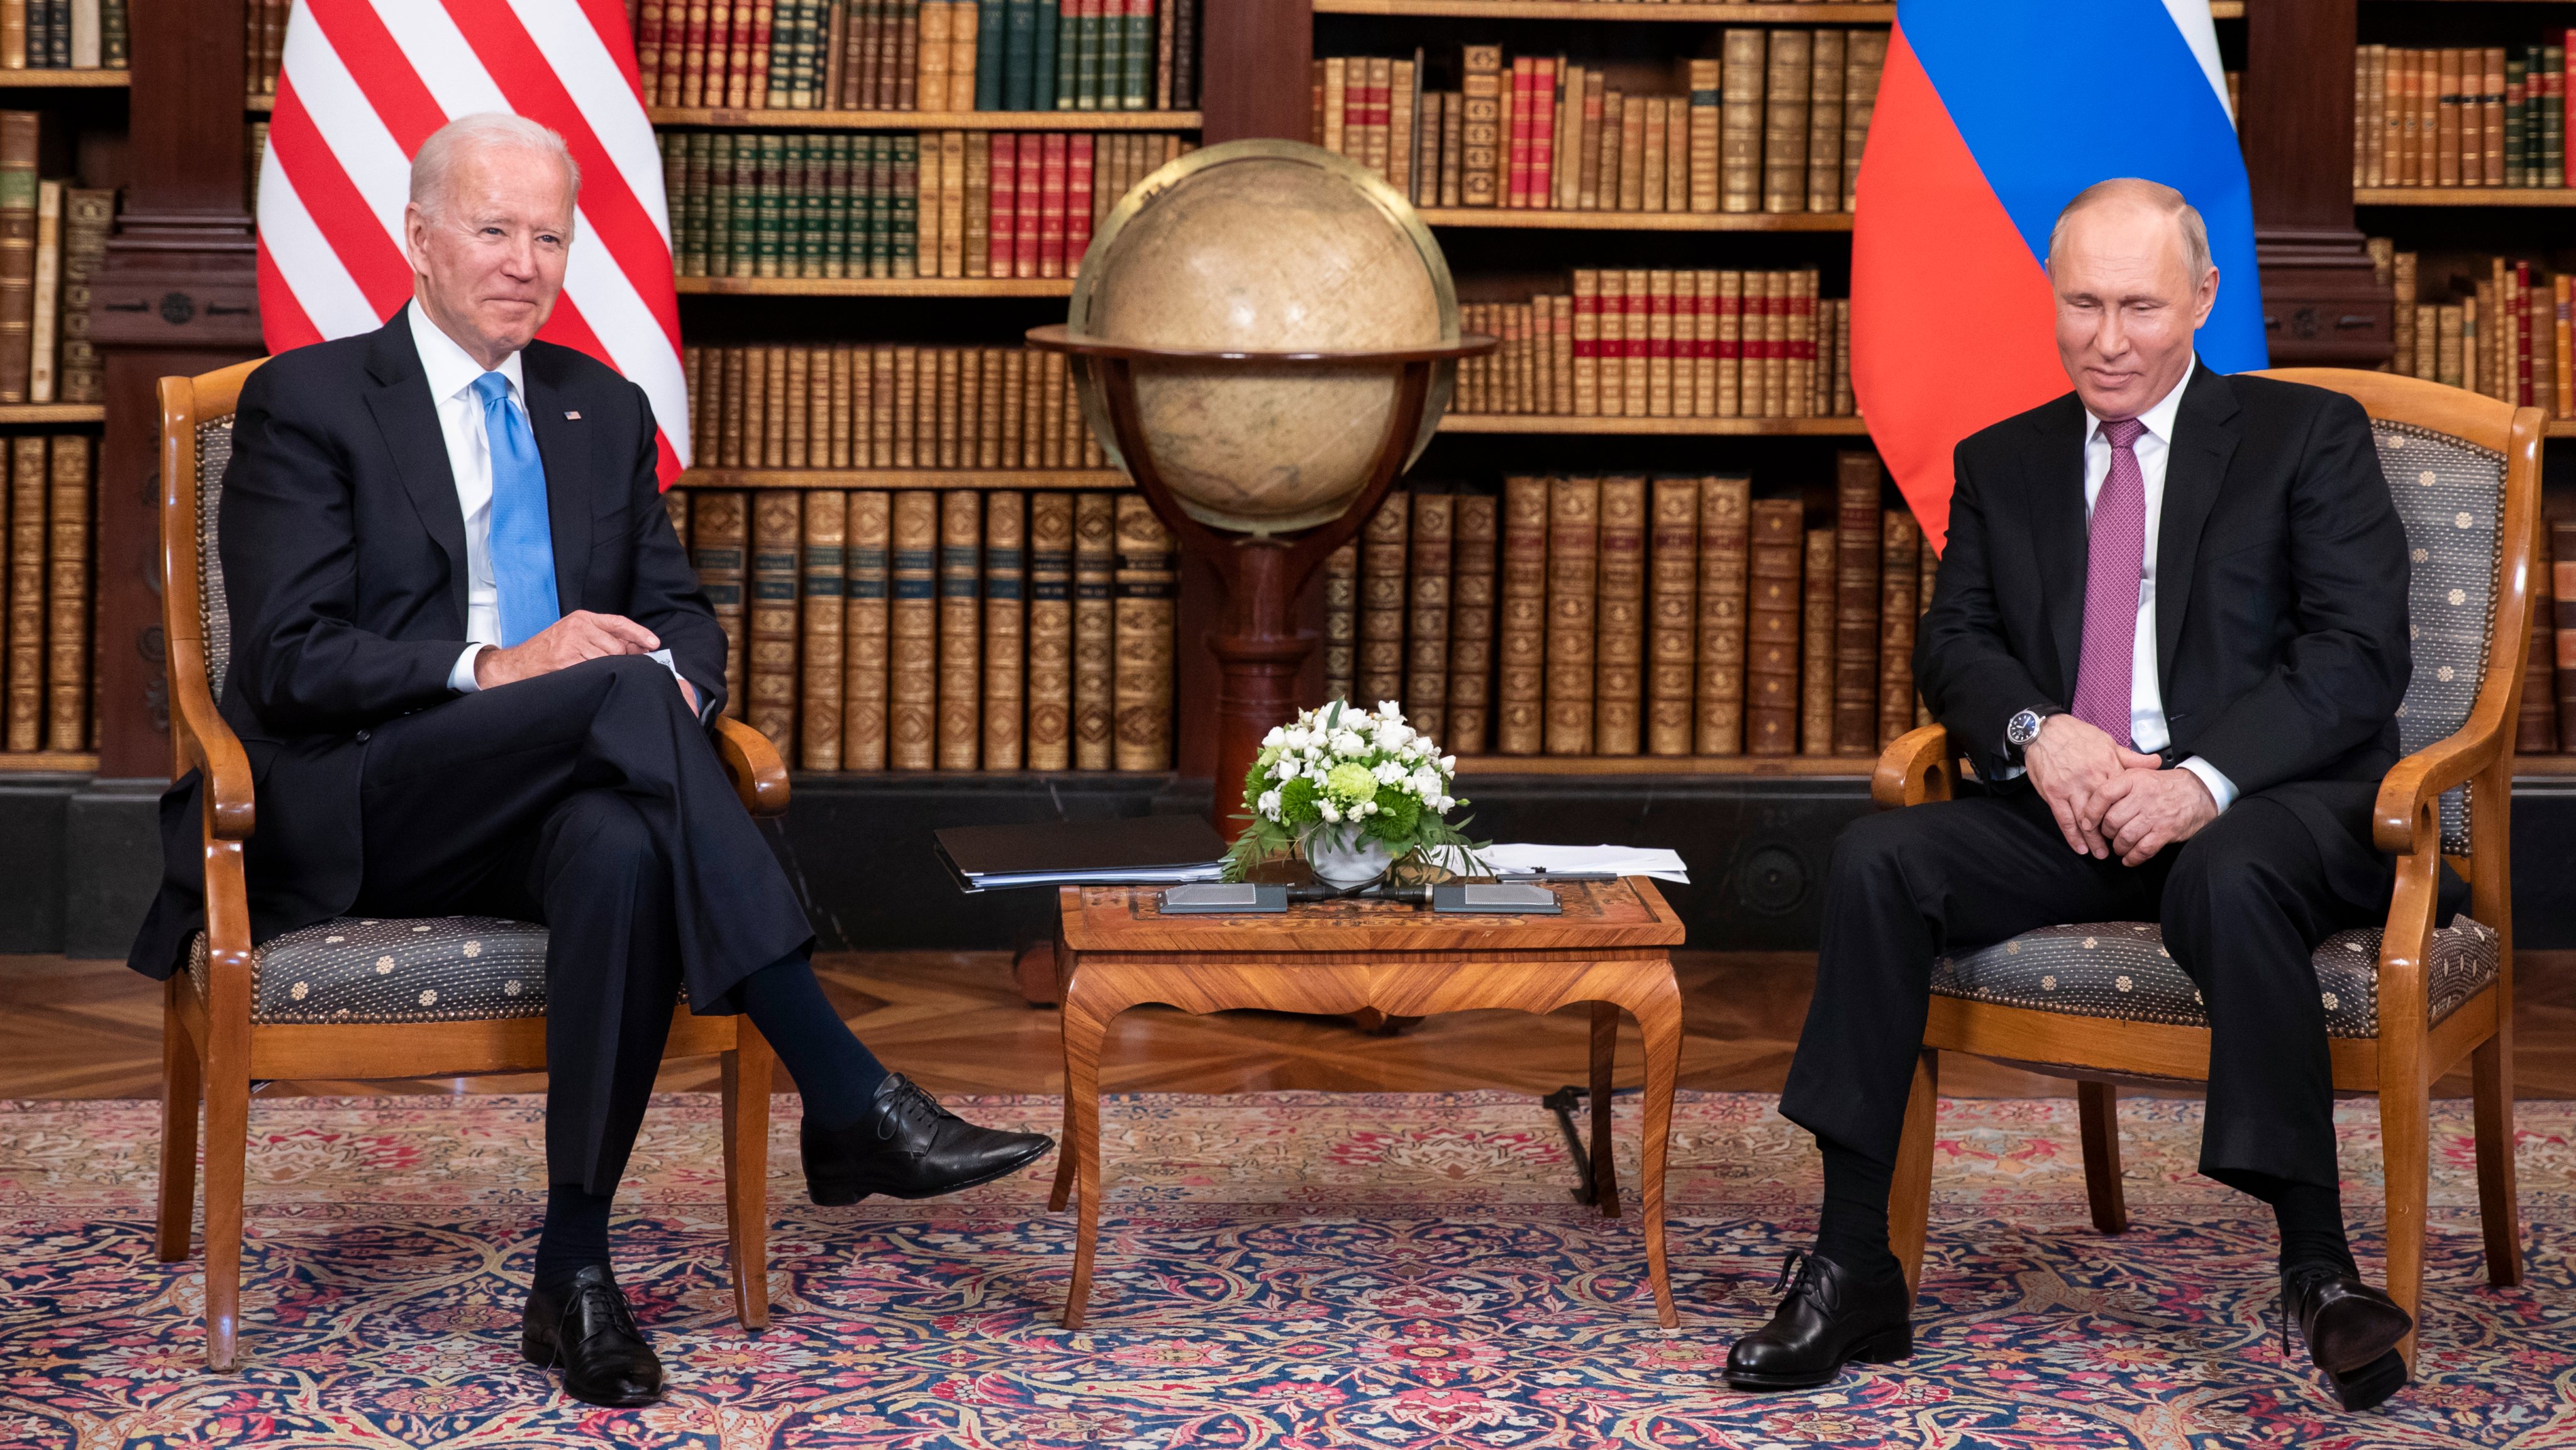 US-Russia Summit 2021 In Geneva